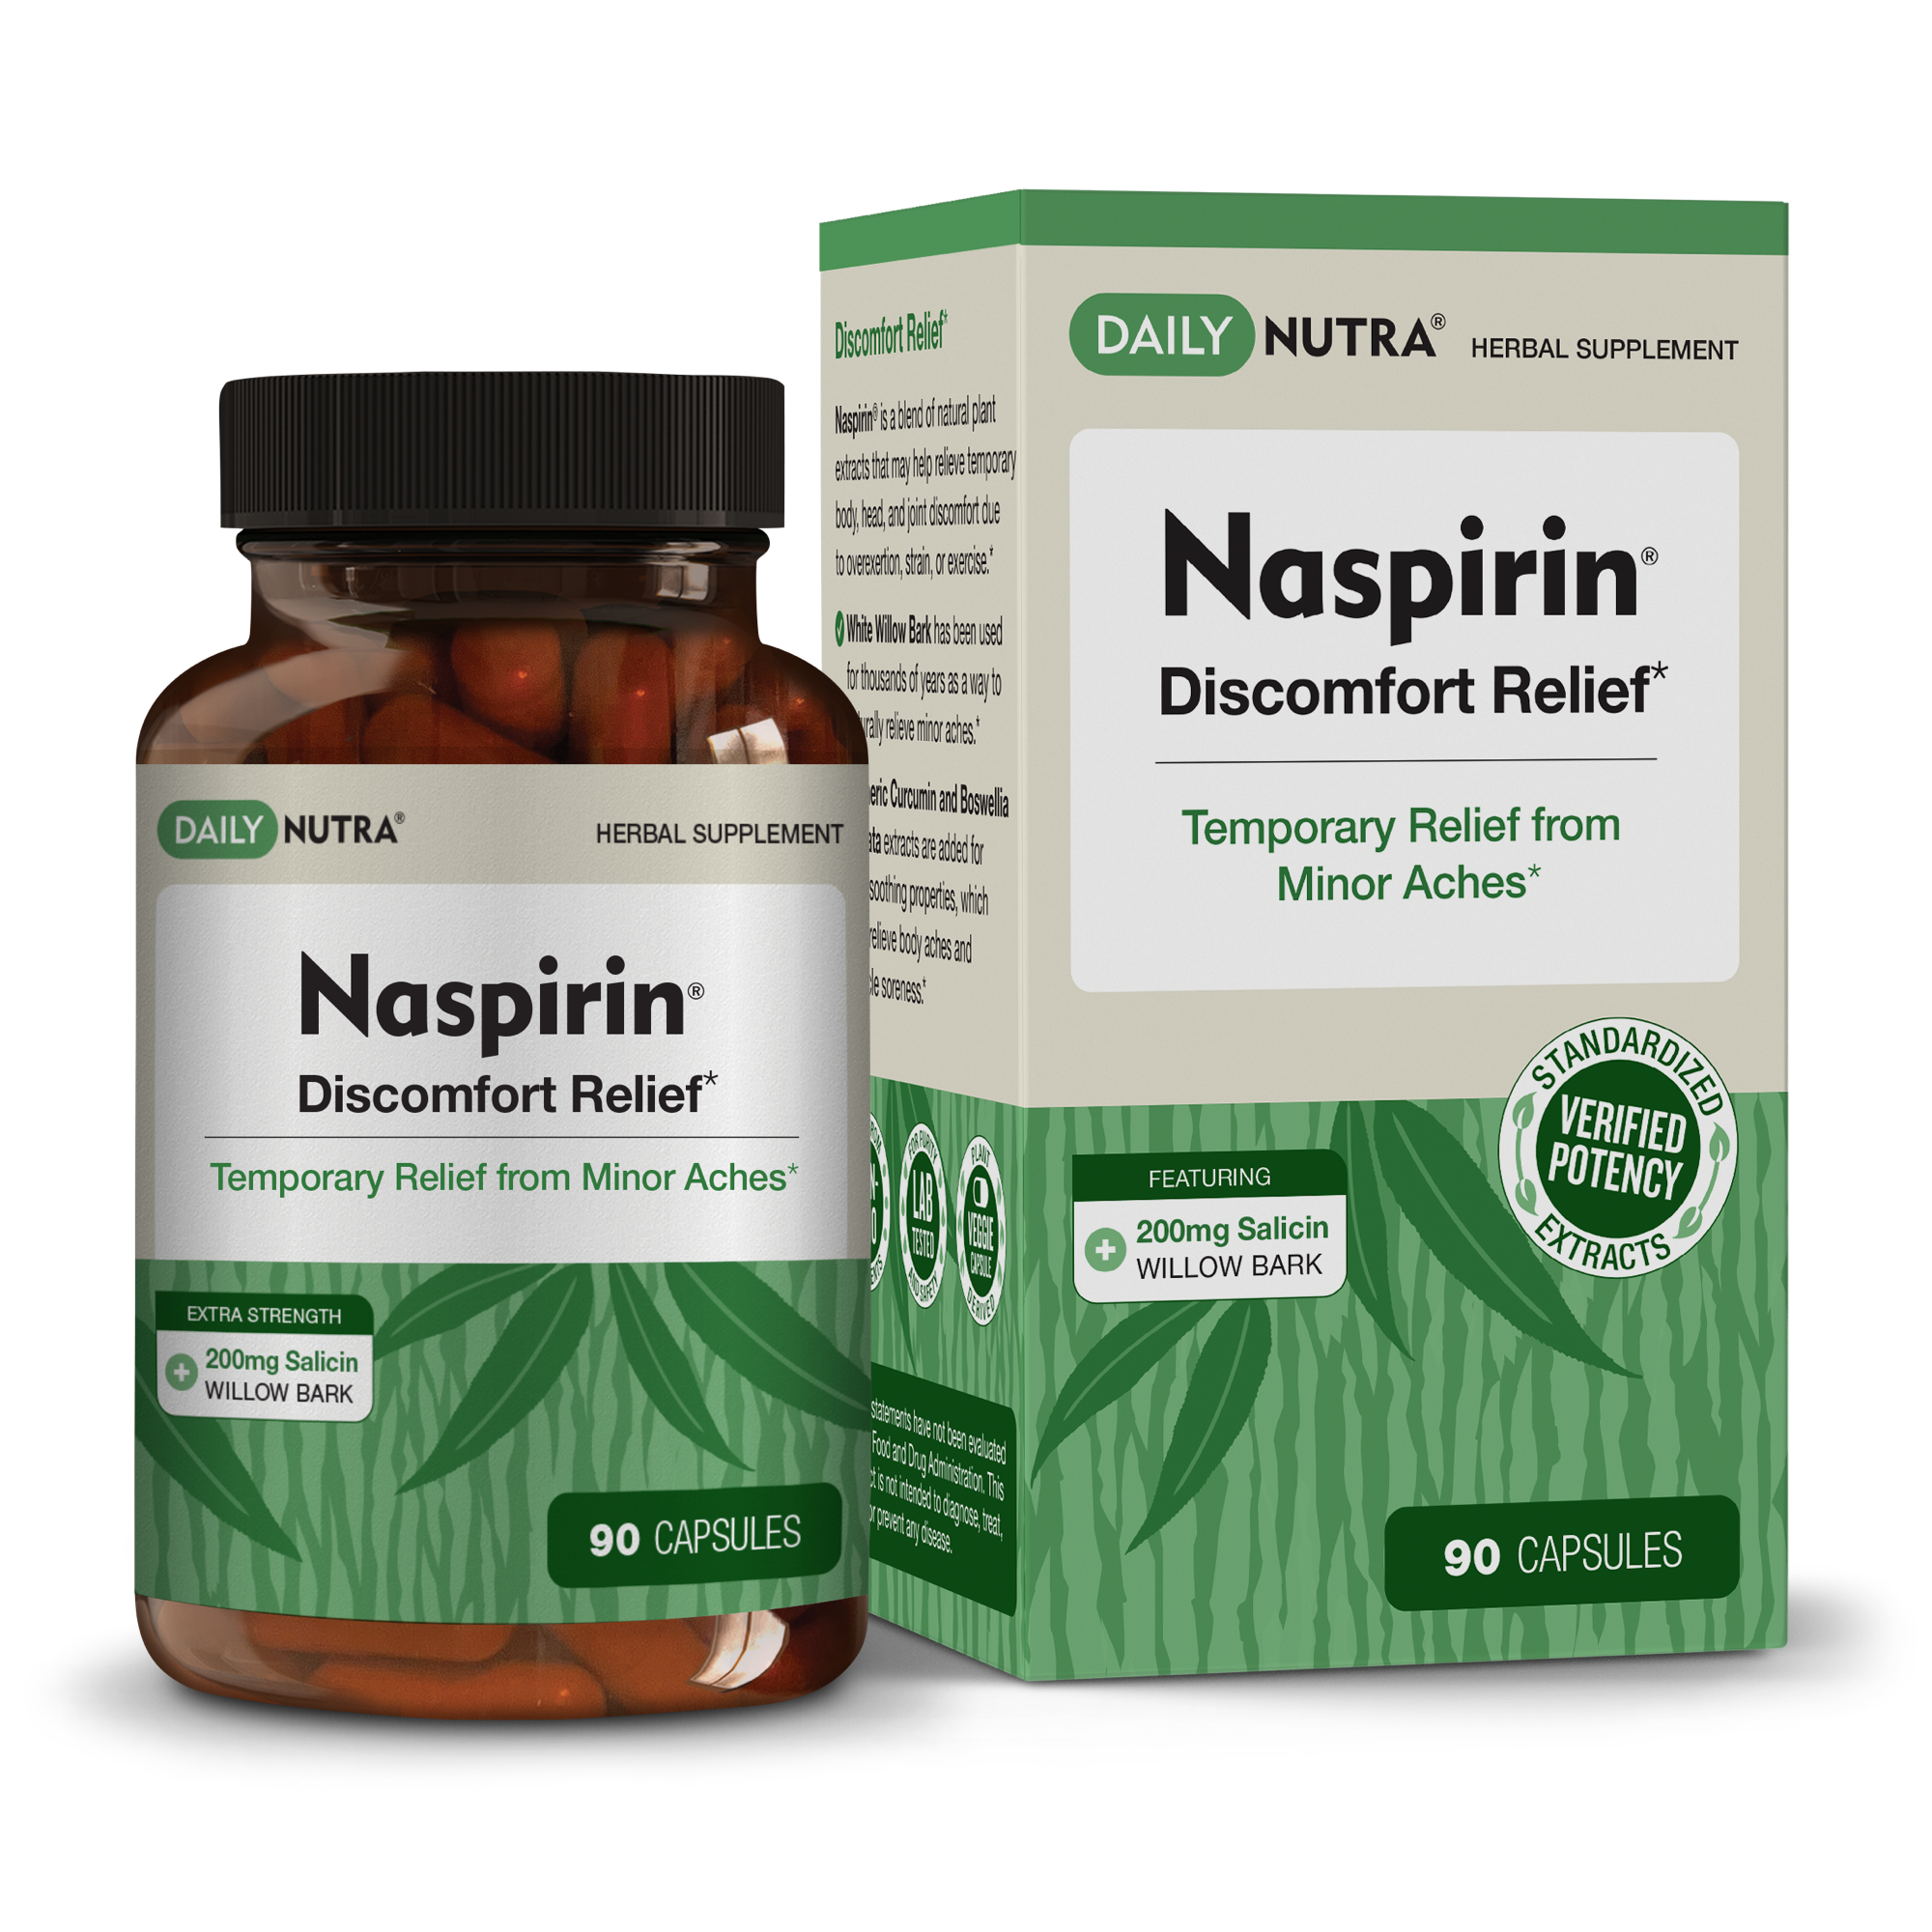 Naspirin Natural Pain Support